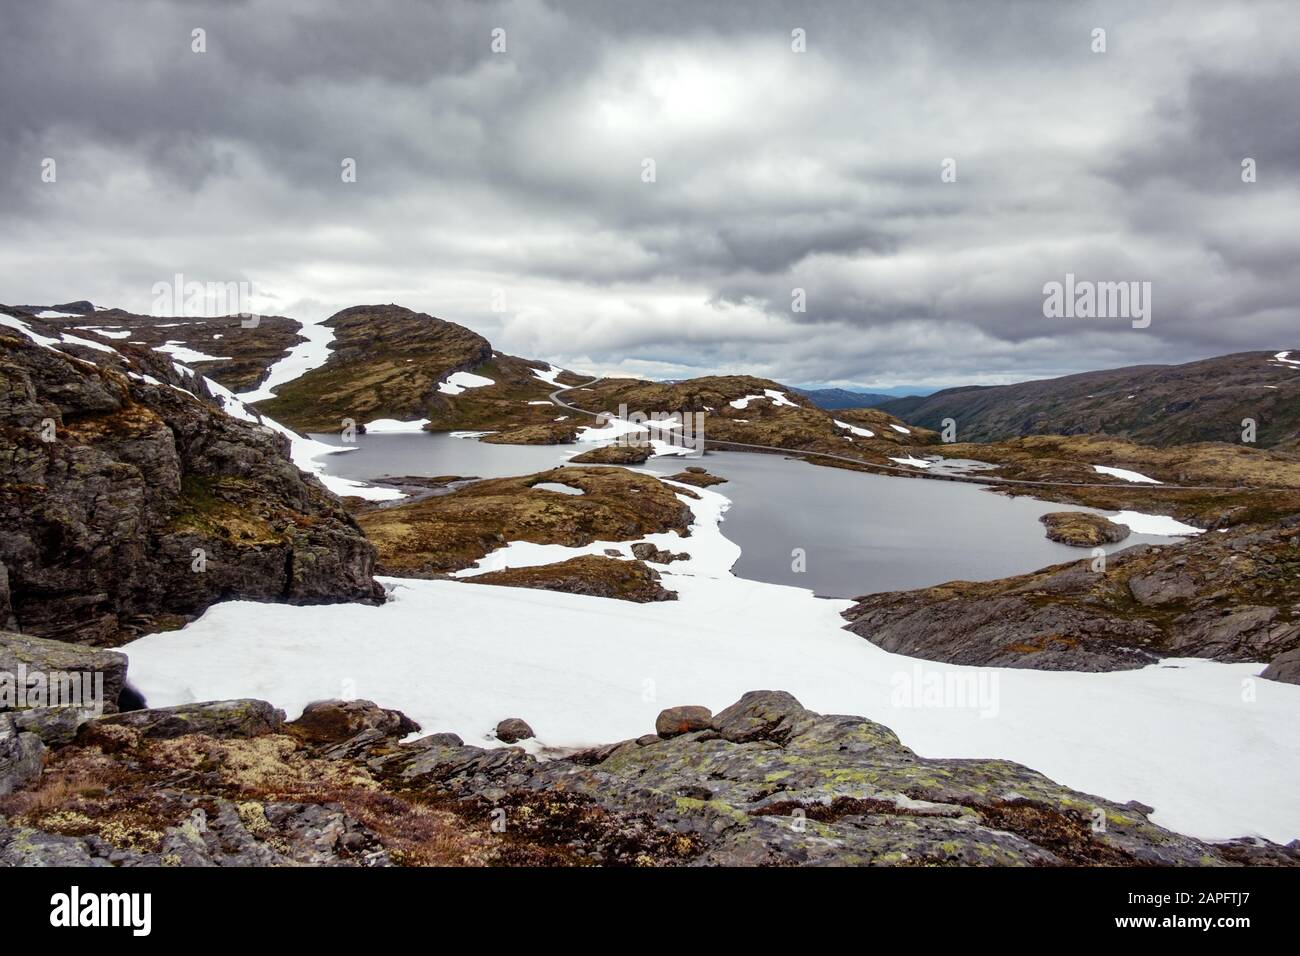 Paysage norvégien typique avec les montagnes enneigées et le lac clair près de la célèbre Aurlandsvegen (Bjorgavegen), mountain road, Aurland, Norvège. Banque D'Images